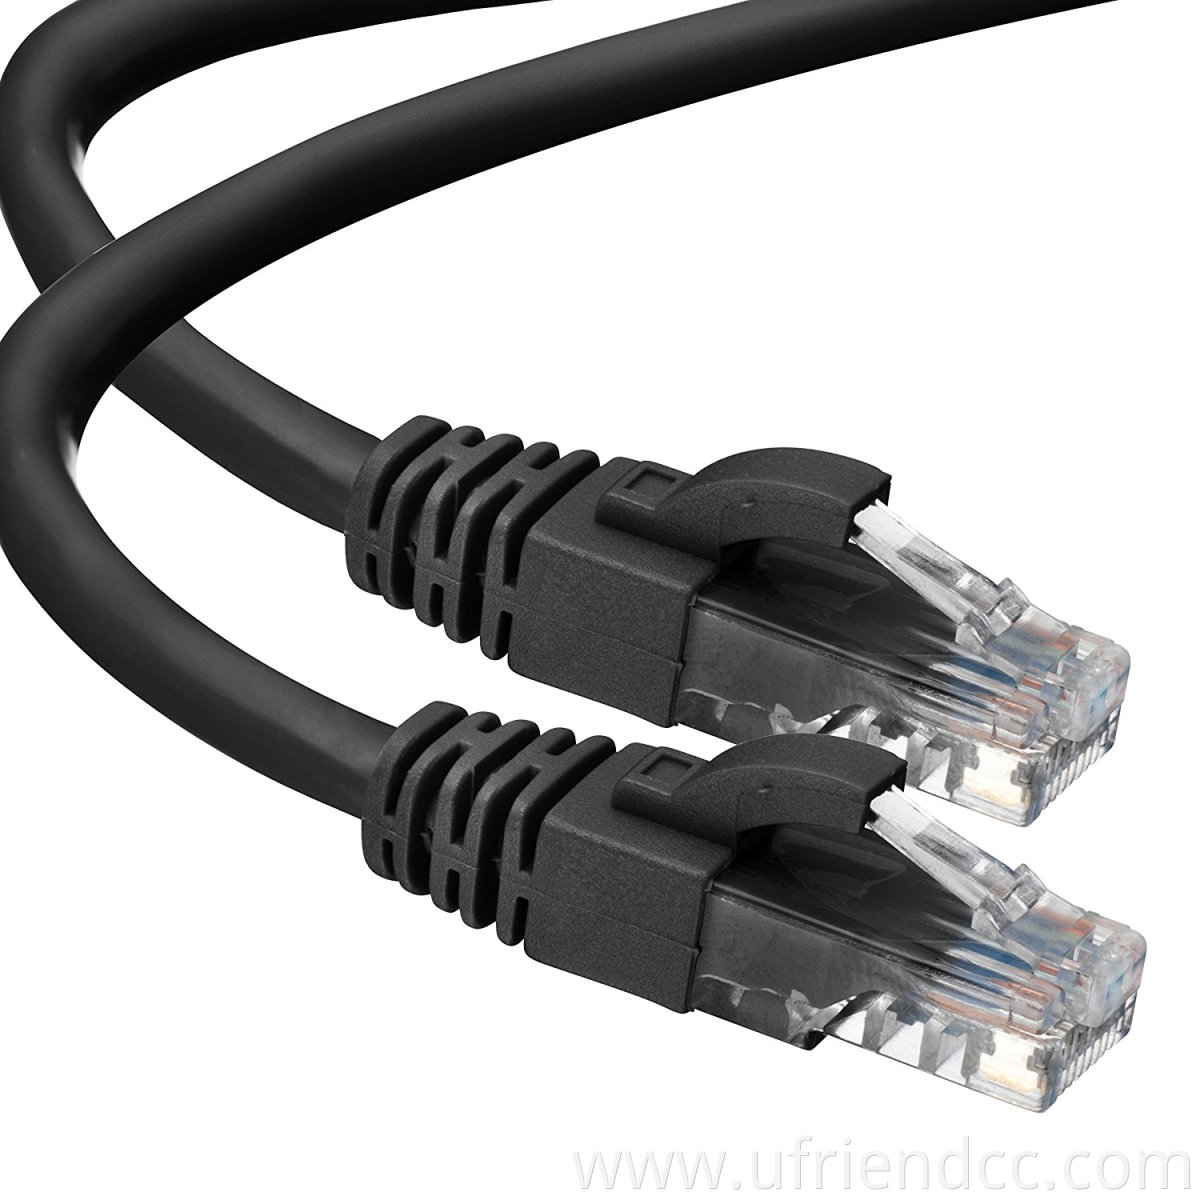 Ethernet Network Cable Cat5e Cat6 7 RJ45 Internet Patch Lead Wholesale 0.25m To 50m